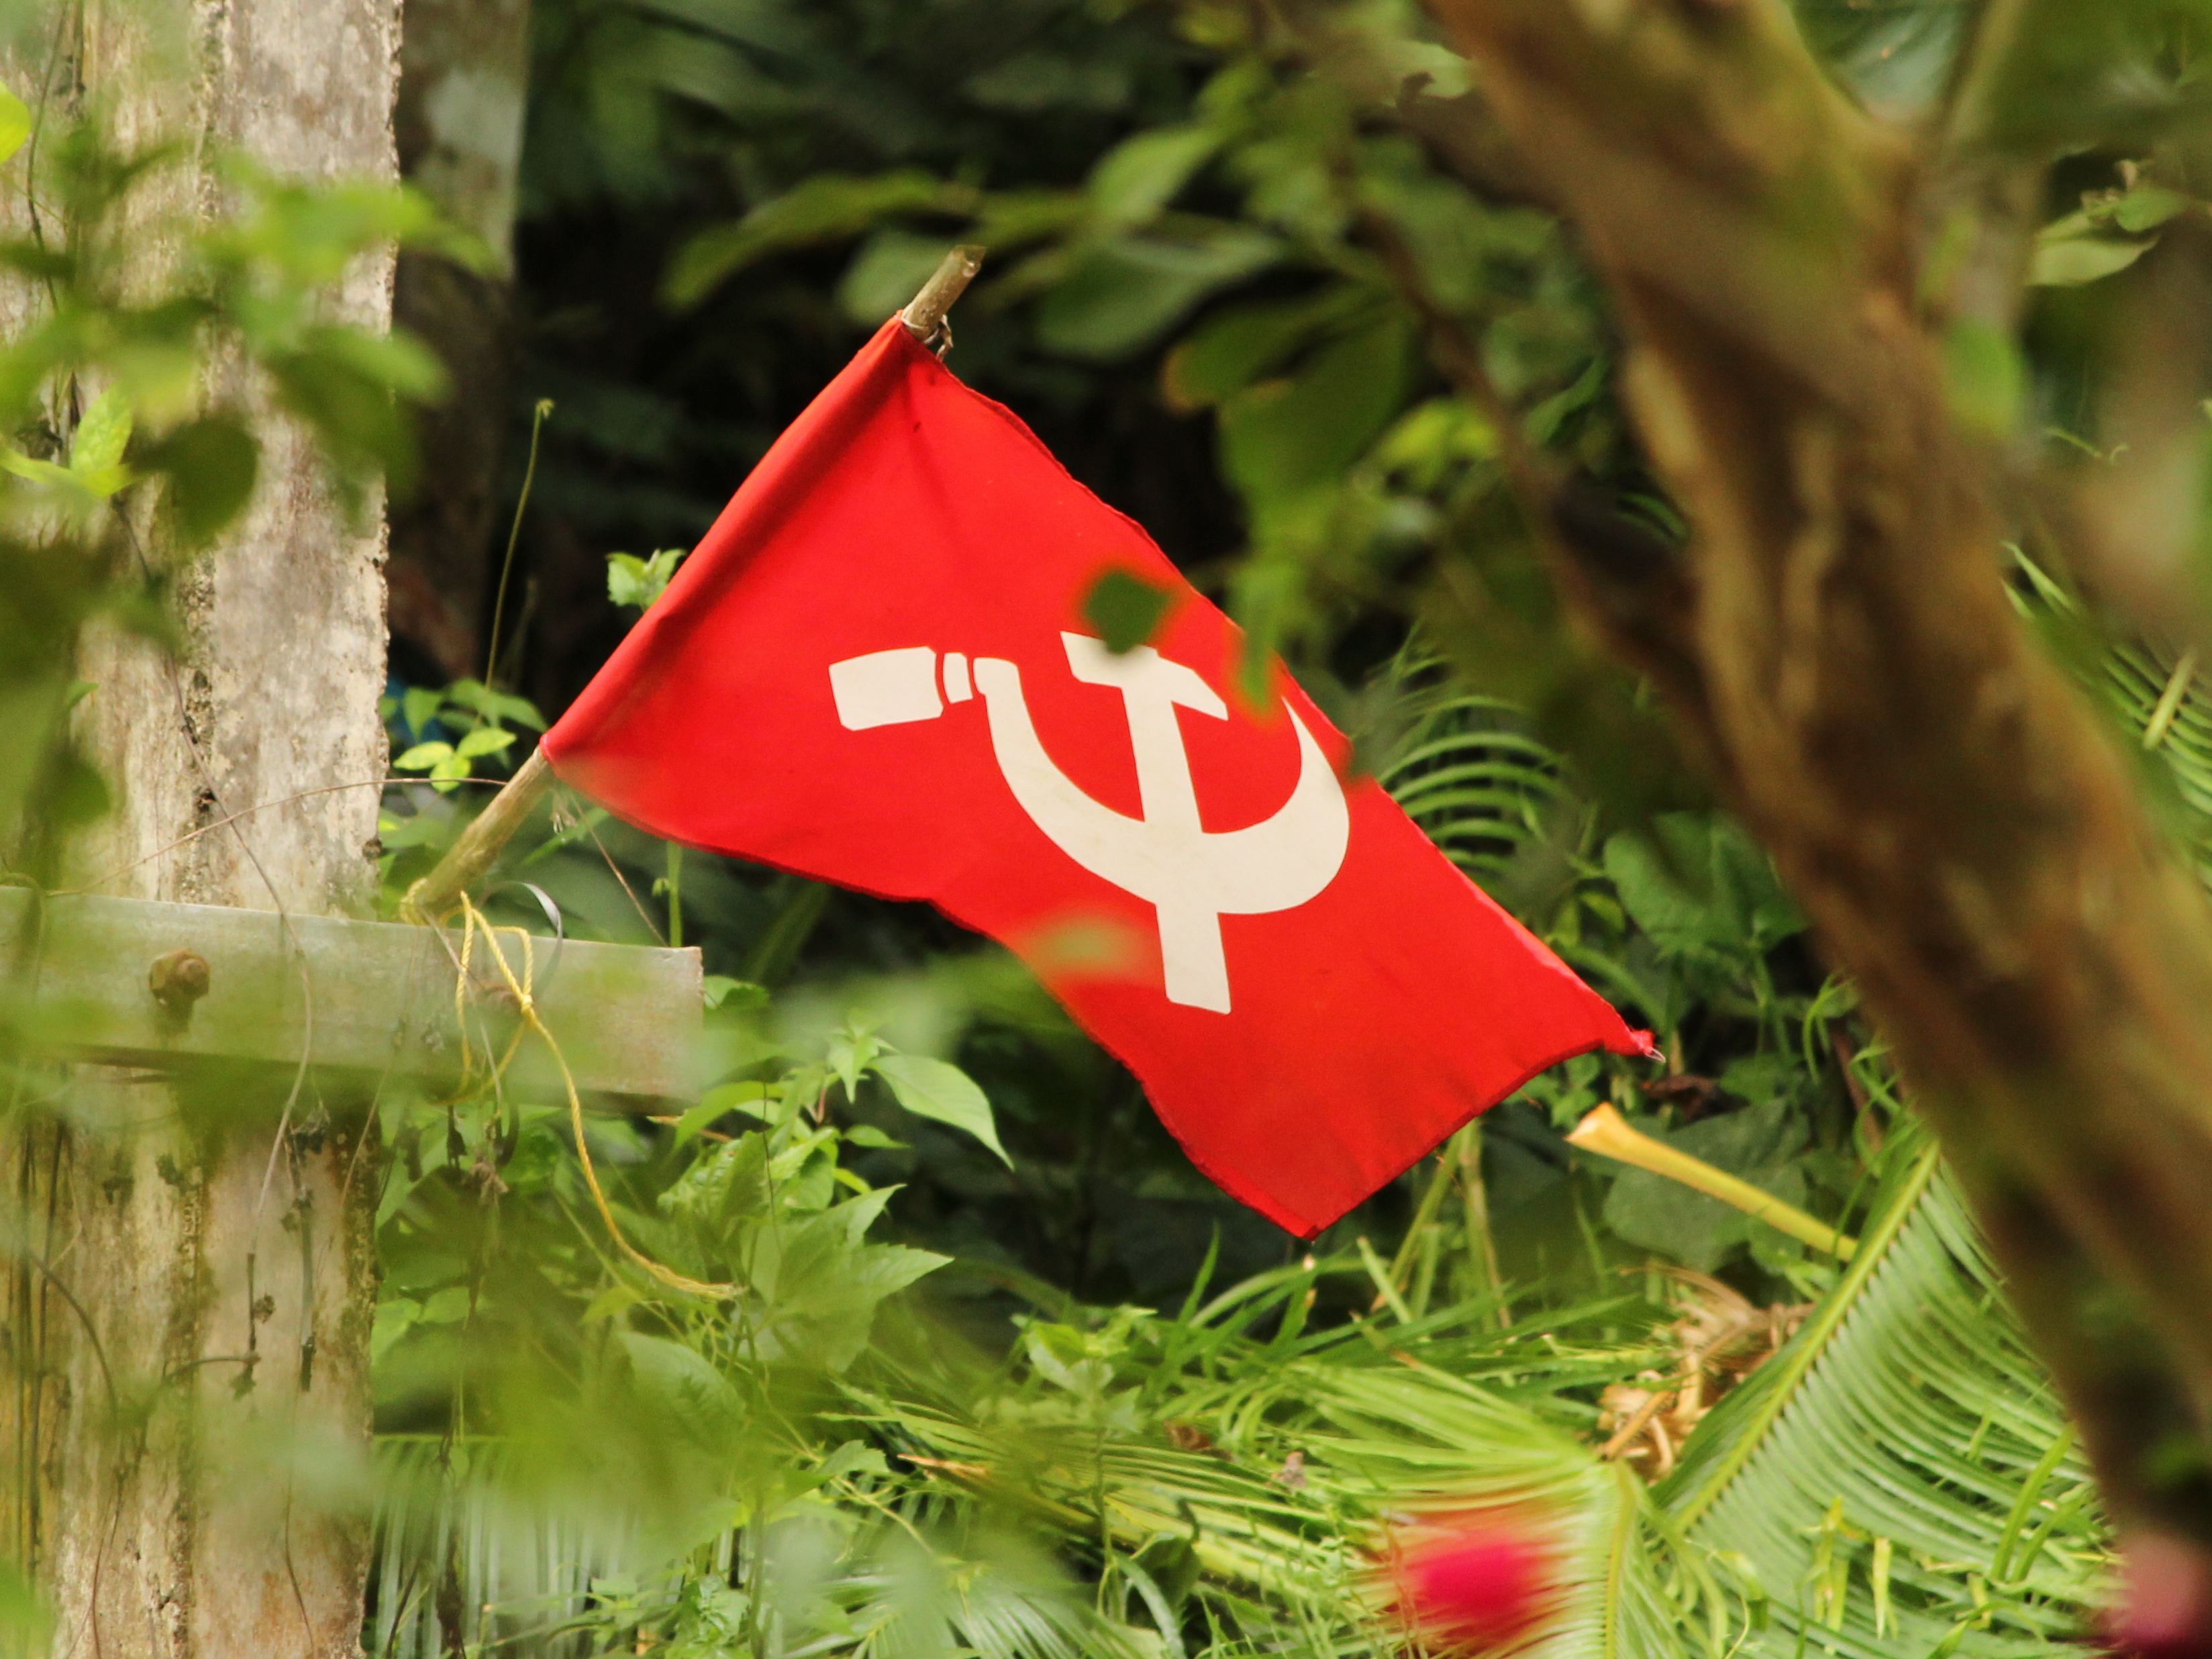 Kerala : Le Left Democratic Front remporte 2 des 3 sièges de la Rajya Sabha (Sénat)